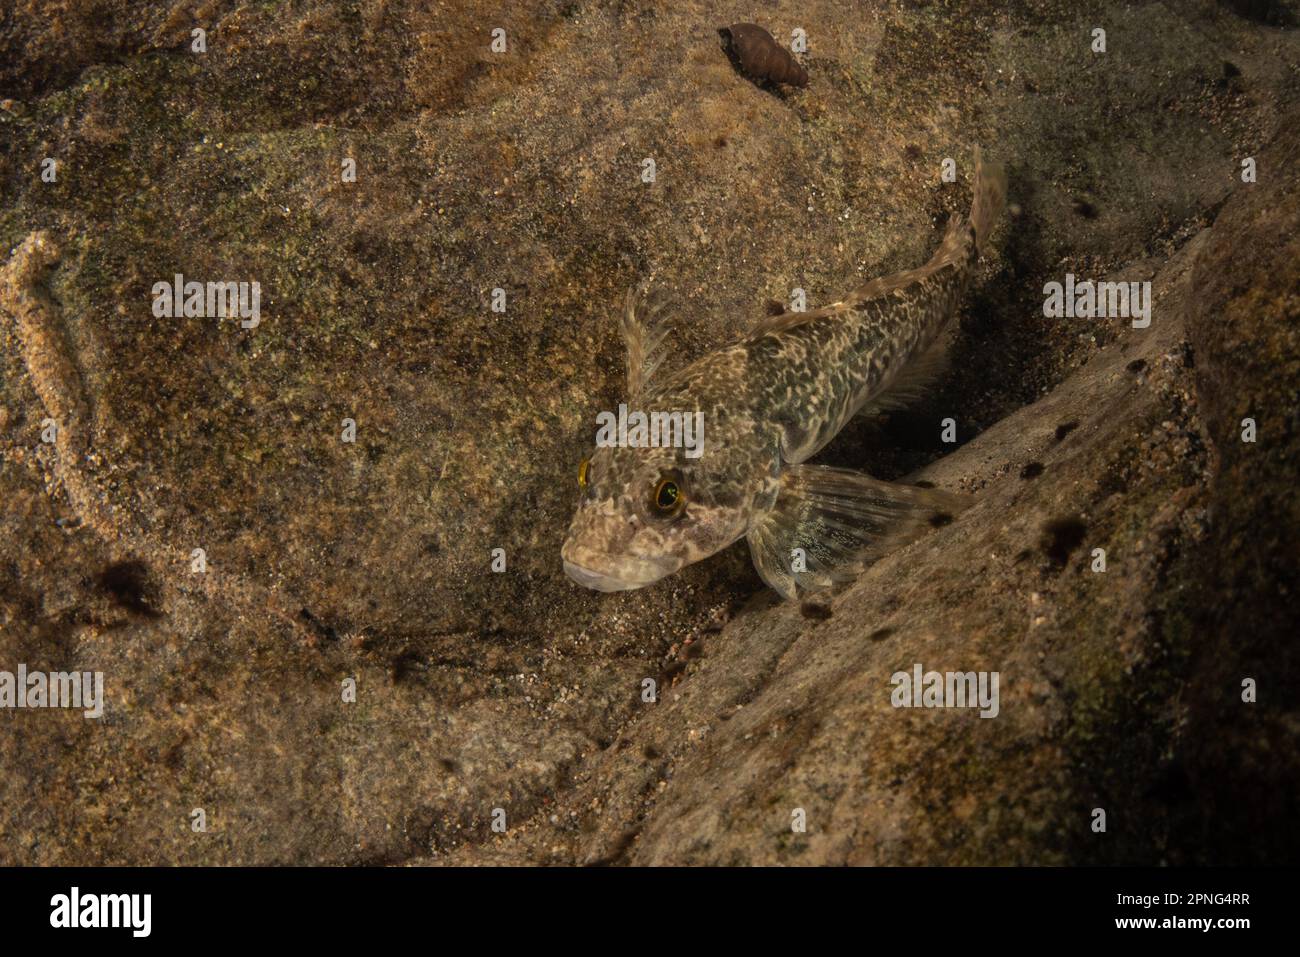 Coastrange Sculpin (Cottus aleuticus) ist gut getarnt auf dem Grund eines kalifornischen Flusses an der Westküste von Nordamerika. Stockfoto